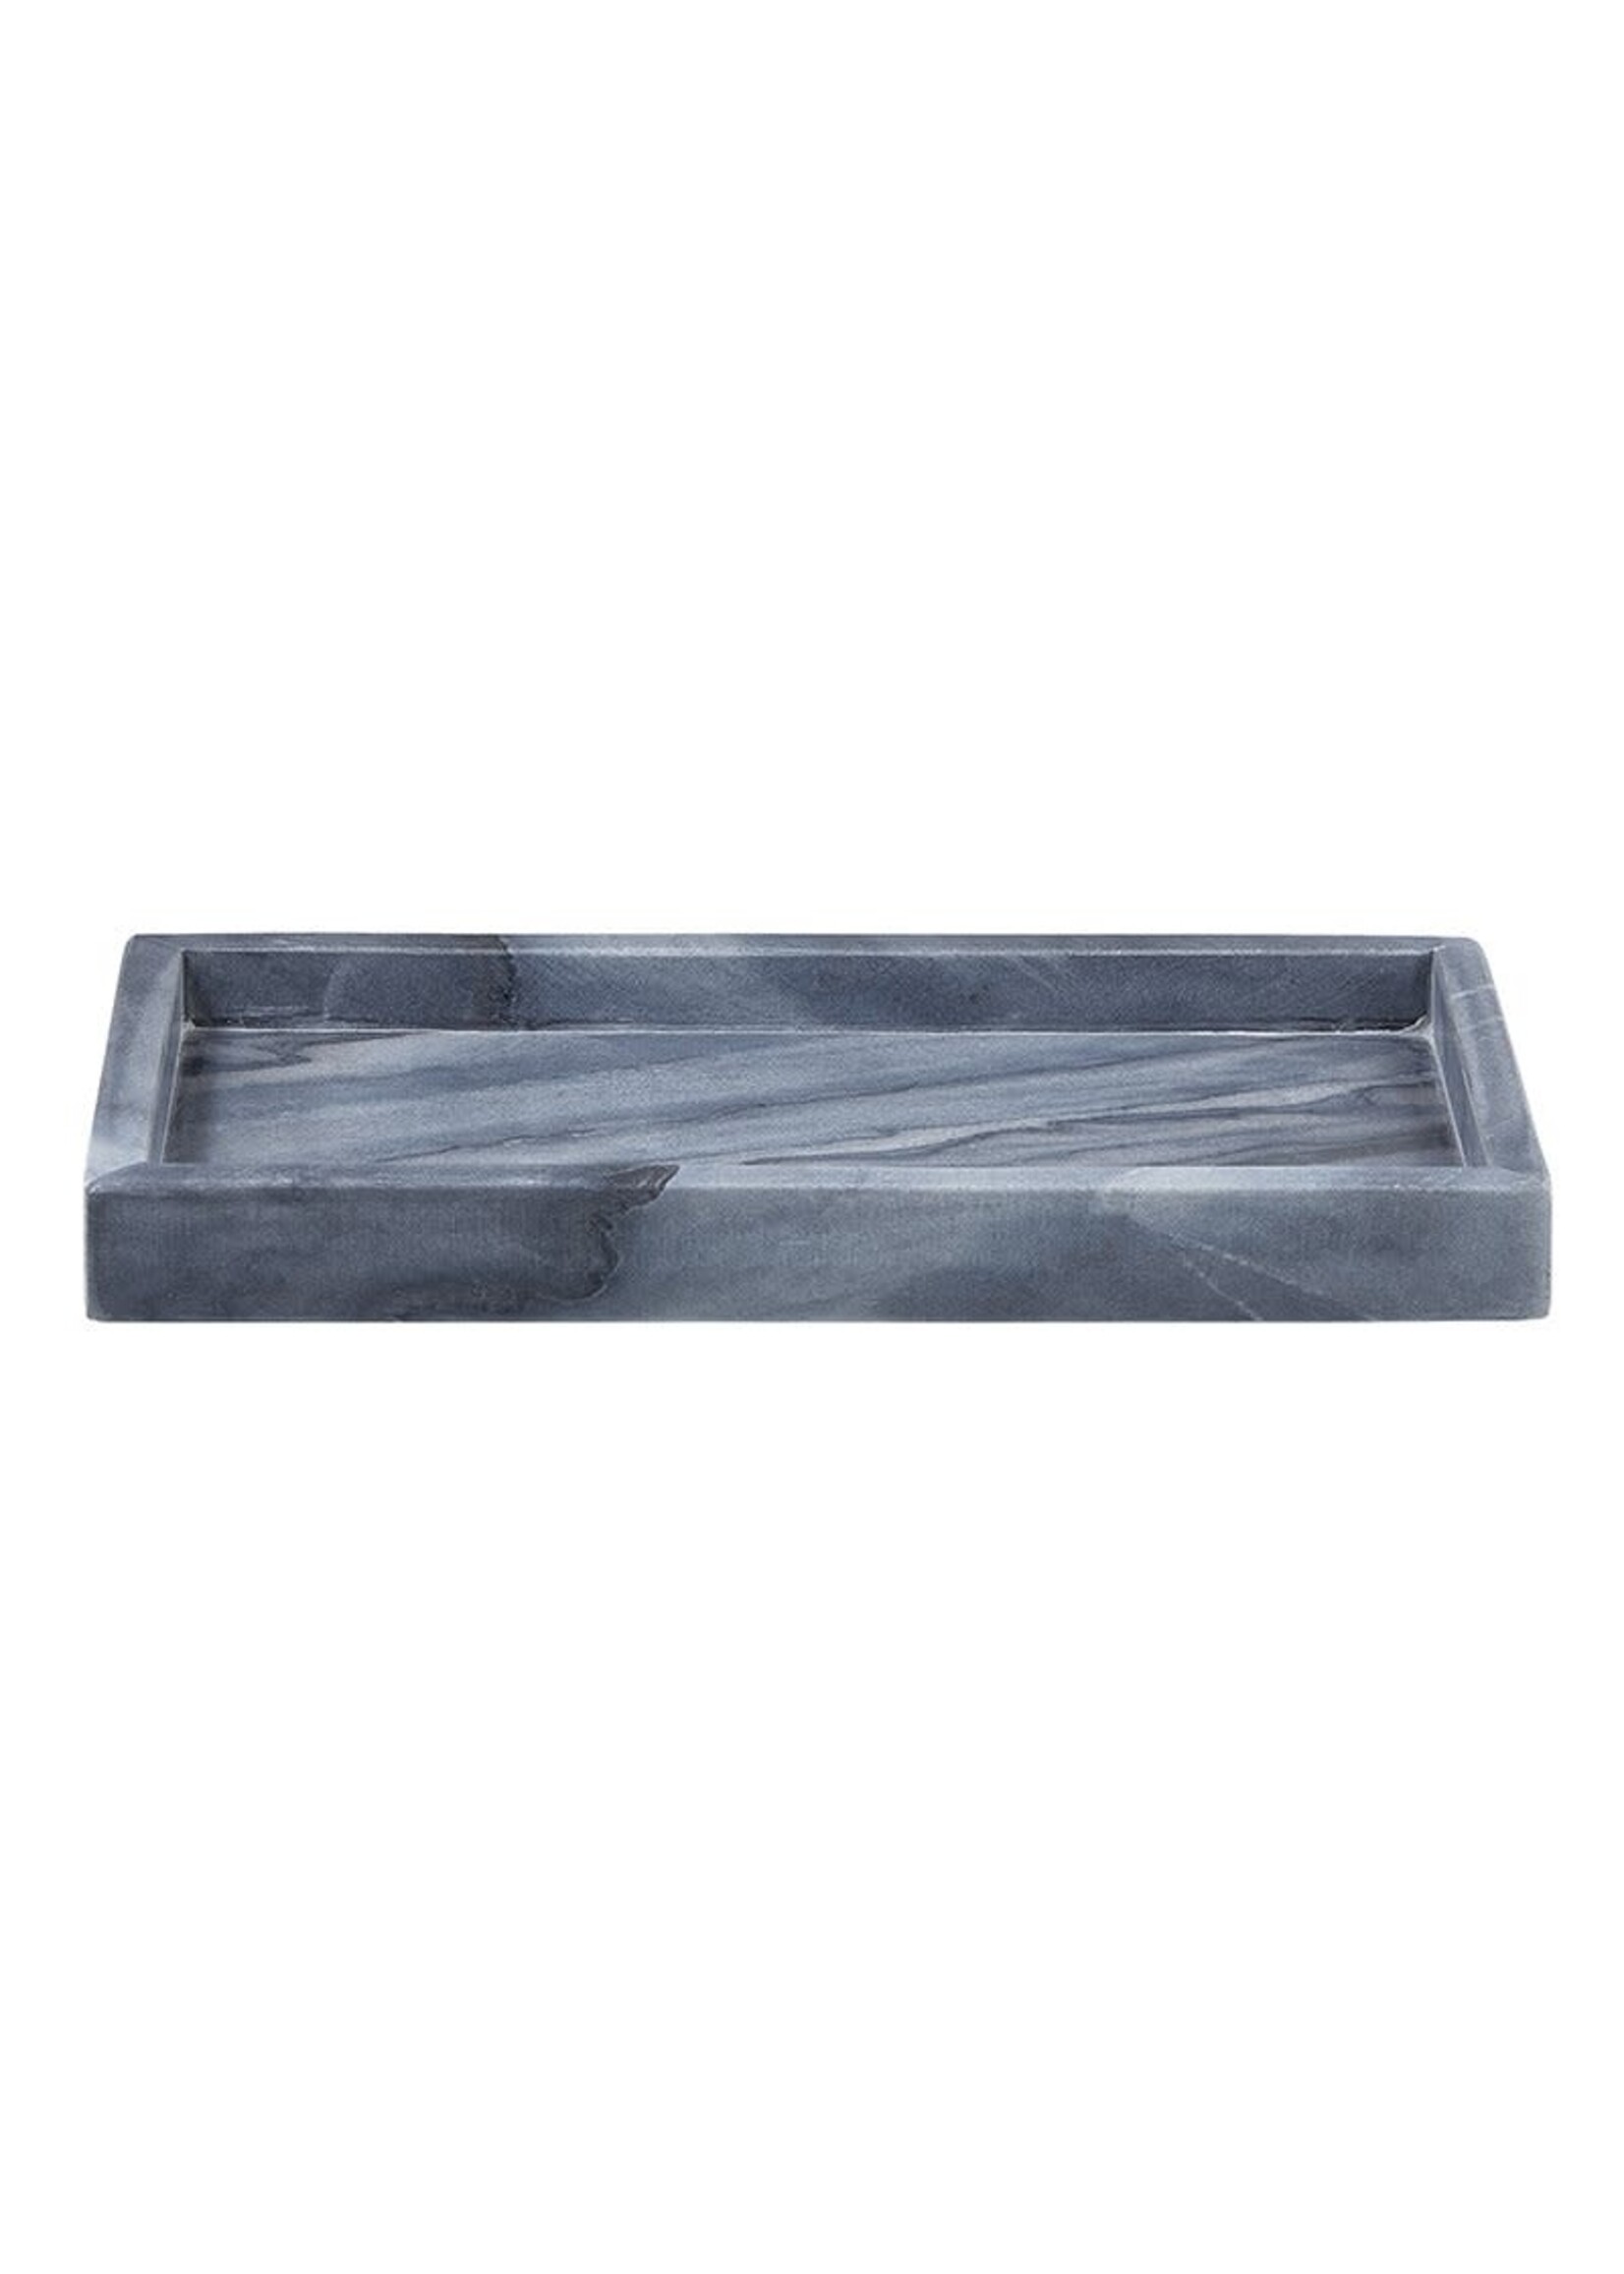 47th Main rectangular Marble tray,gray